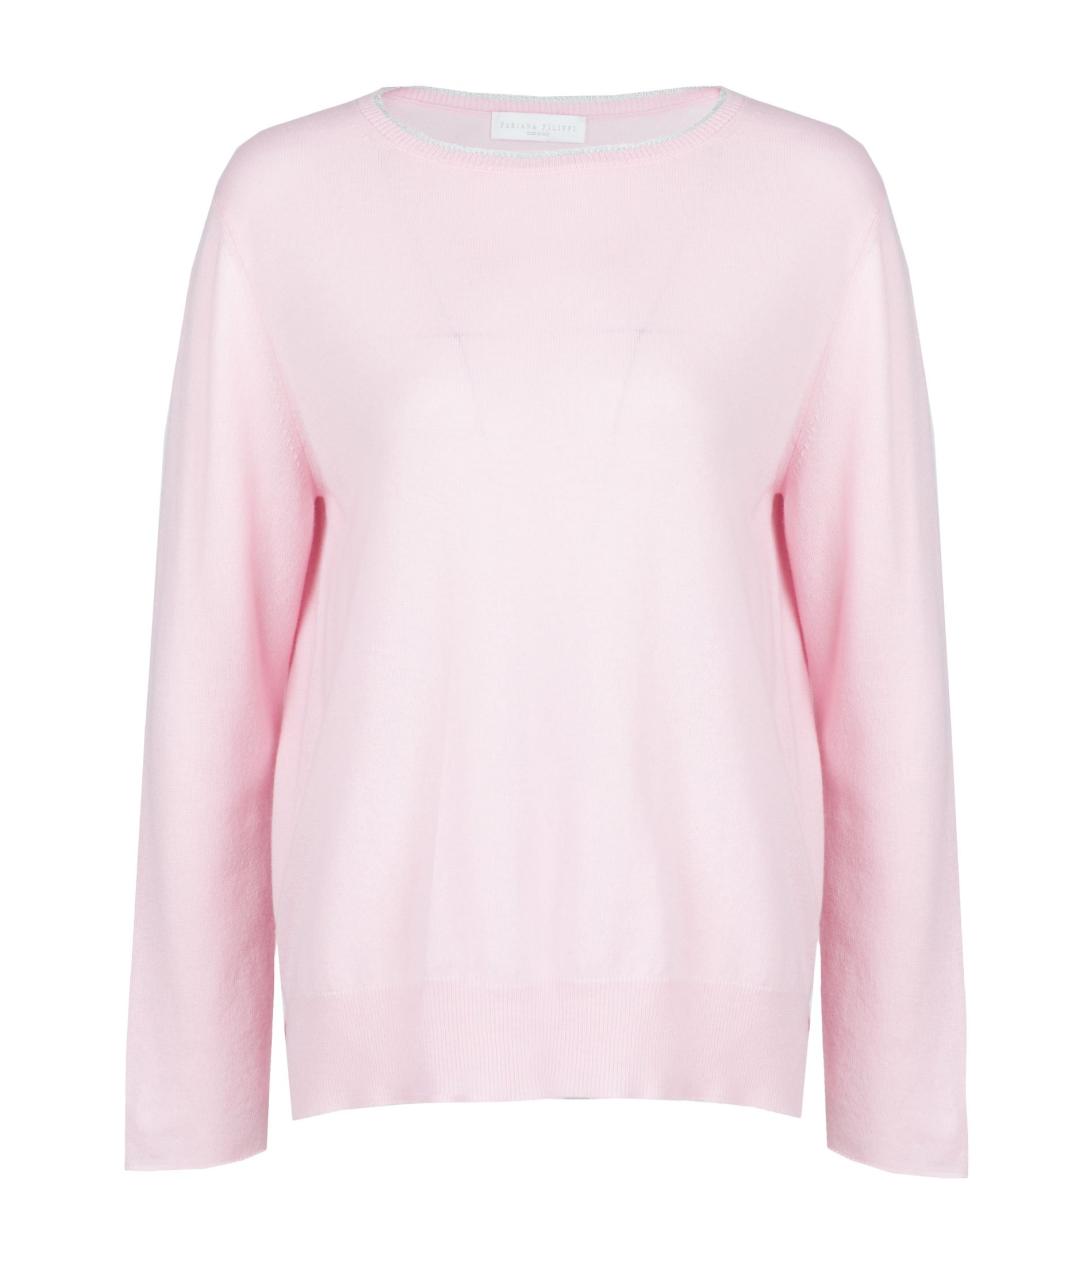 FABIANA FILIPPI Розовый кашемировый джемпер / свитер, фото 1